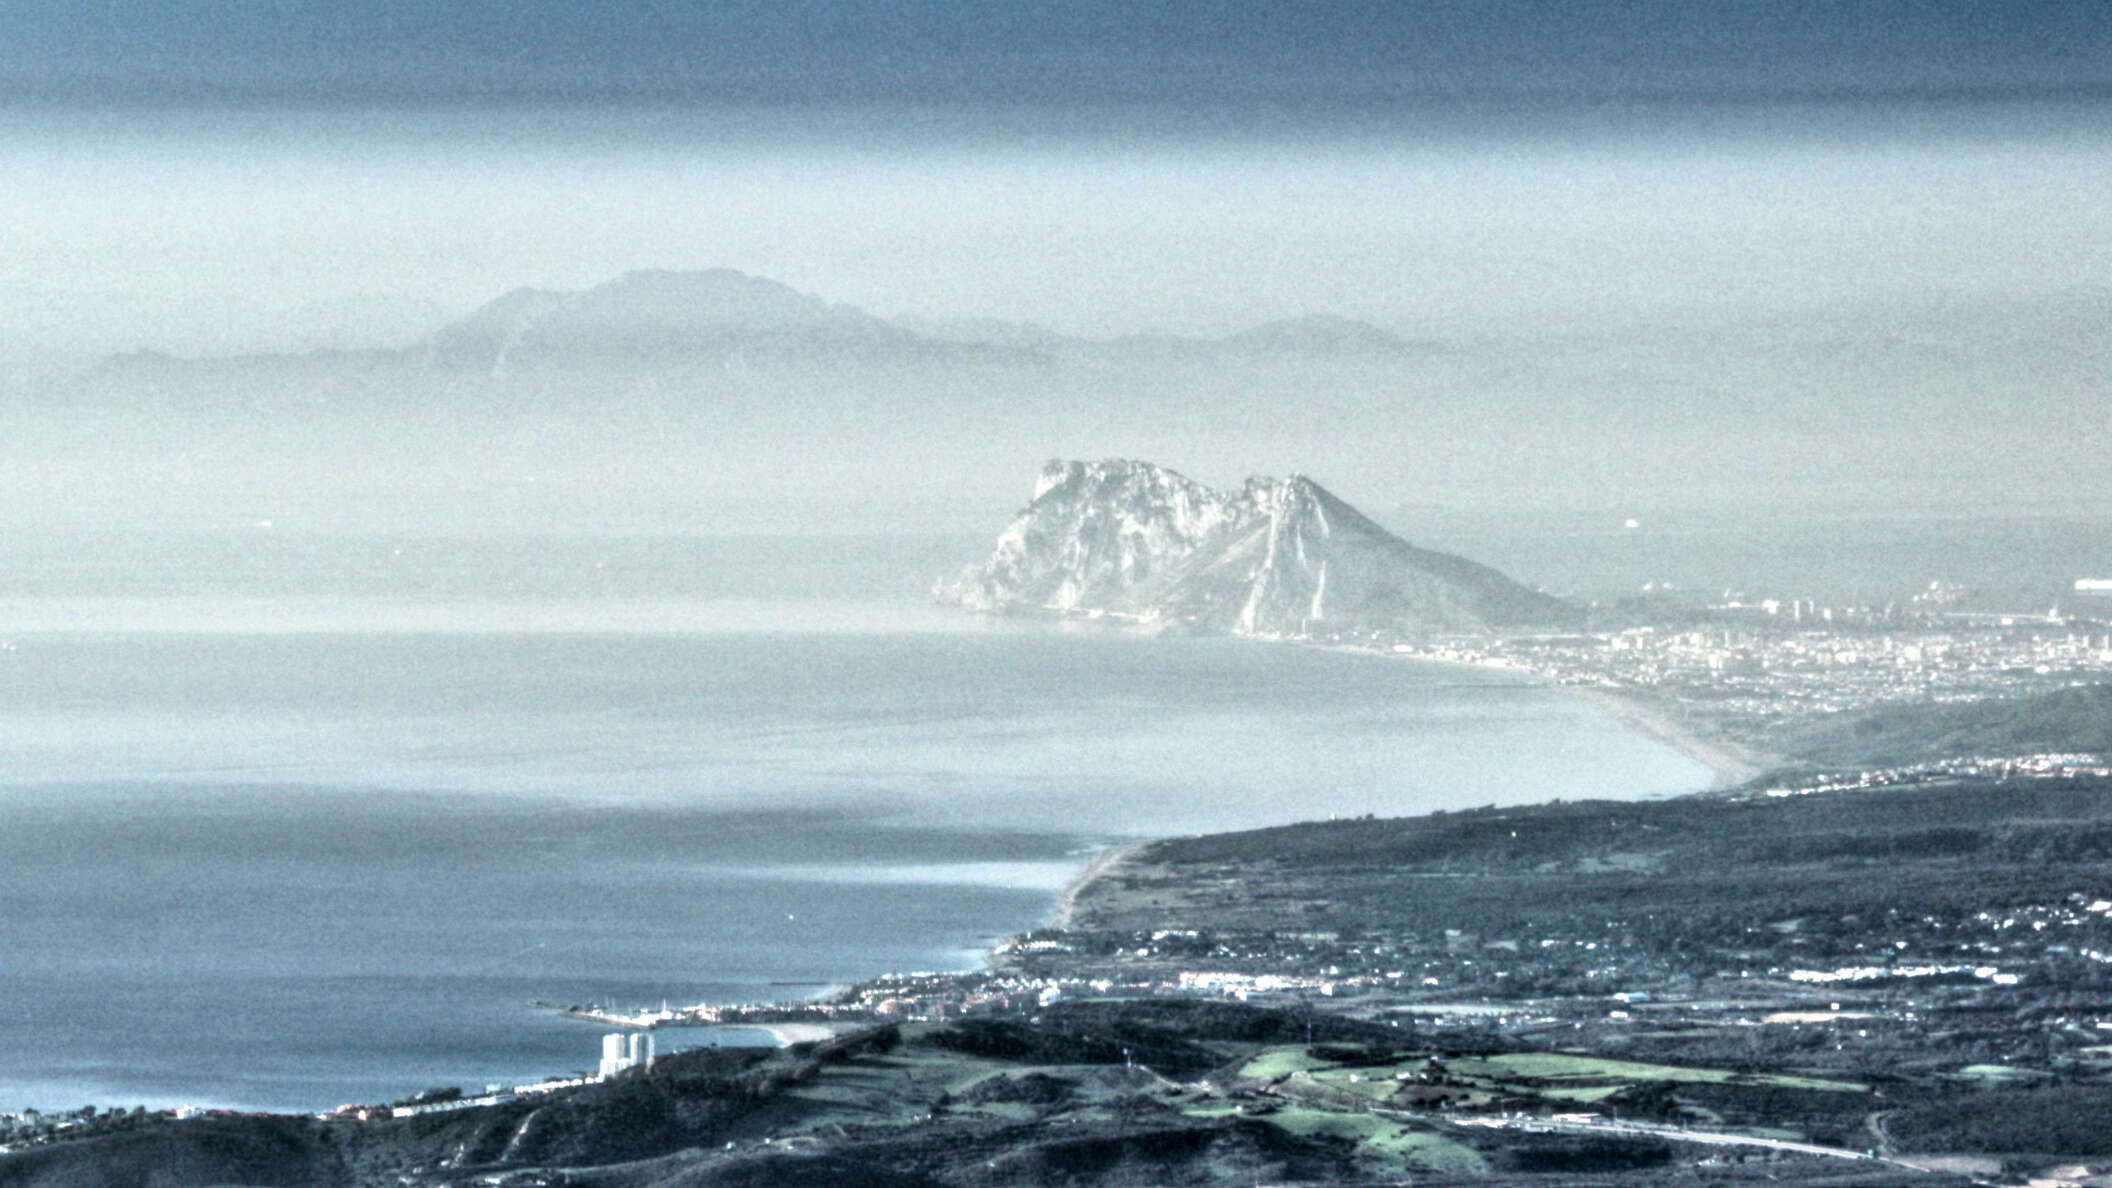 Gibraltar with Strait of Gibraltar